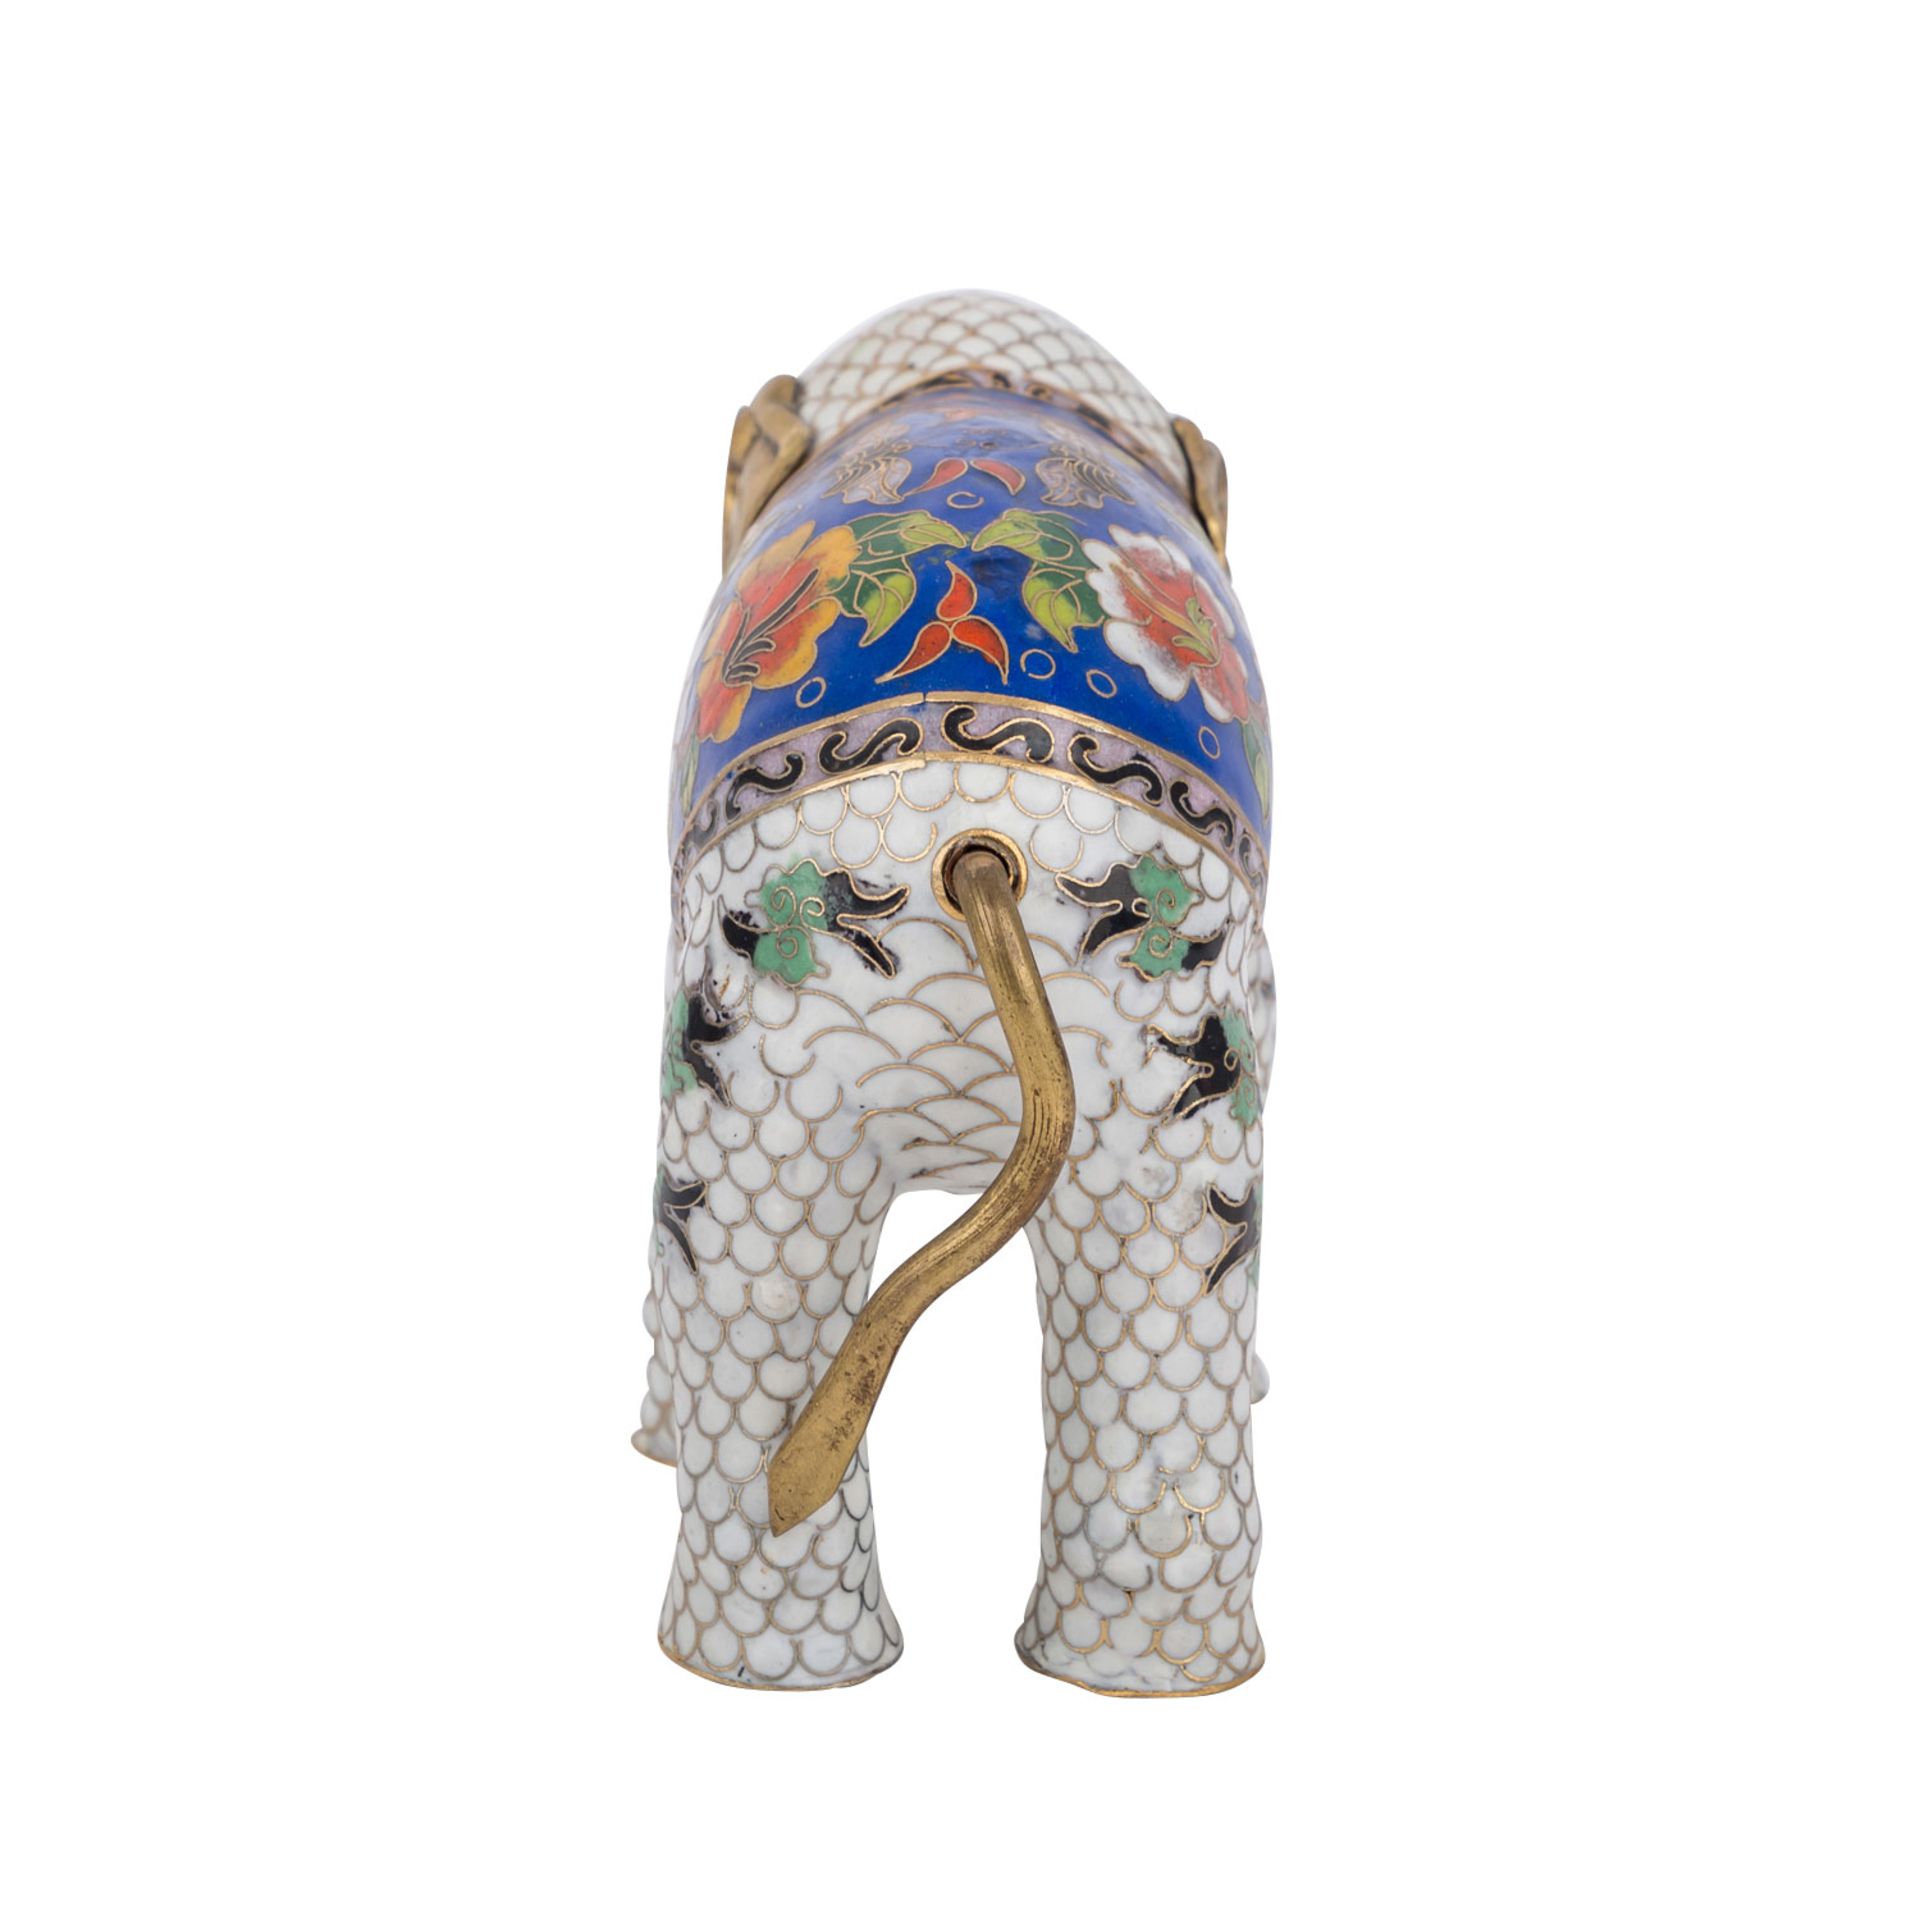 Cloisonné Elefant. CHINA.L: 22 cm. Min.besch..Cloisonné enamel elephant. China.Lenght: 22 cm. - Bild 4 aus 4